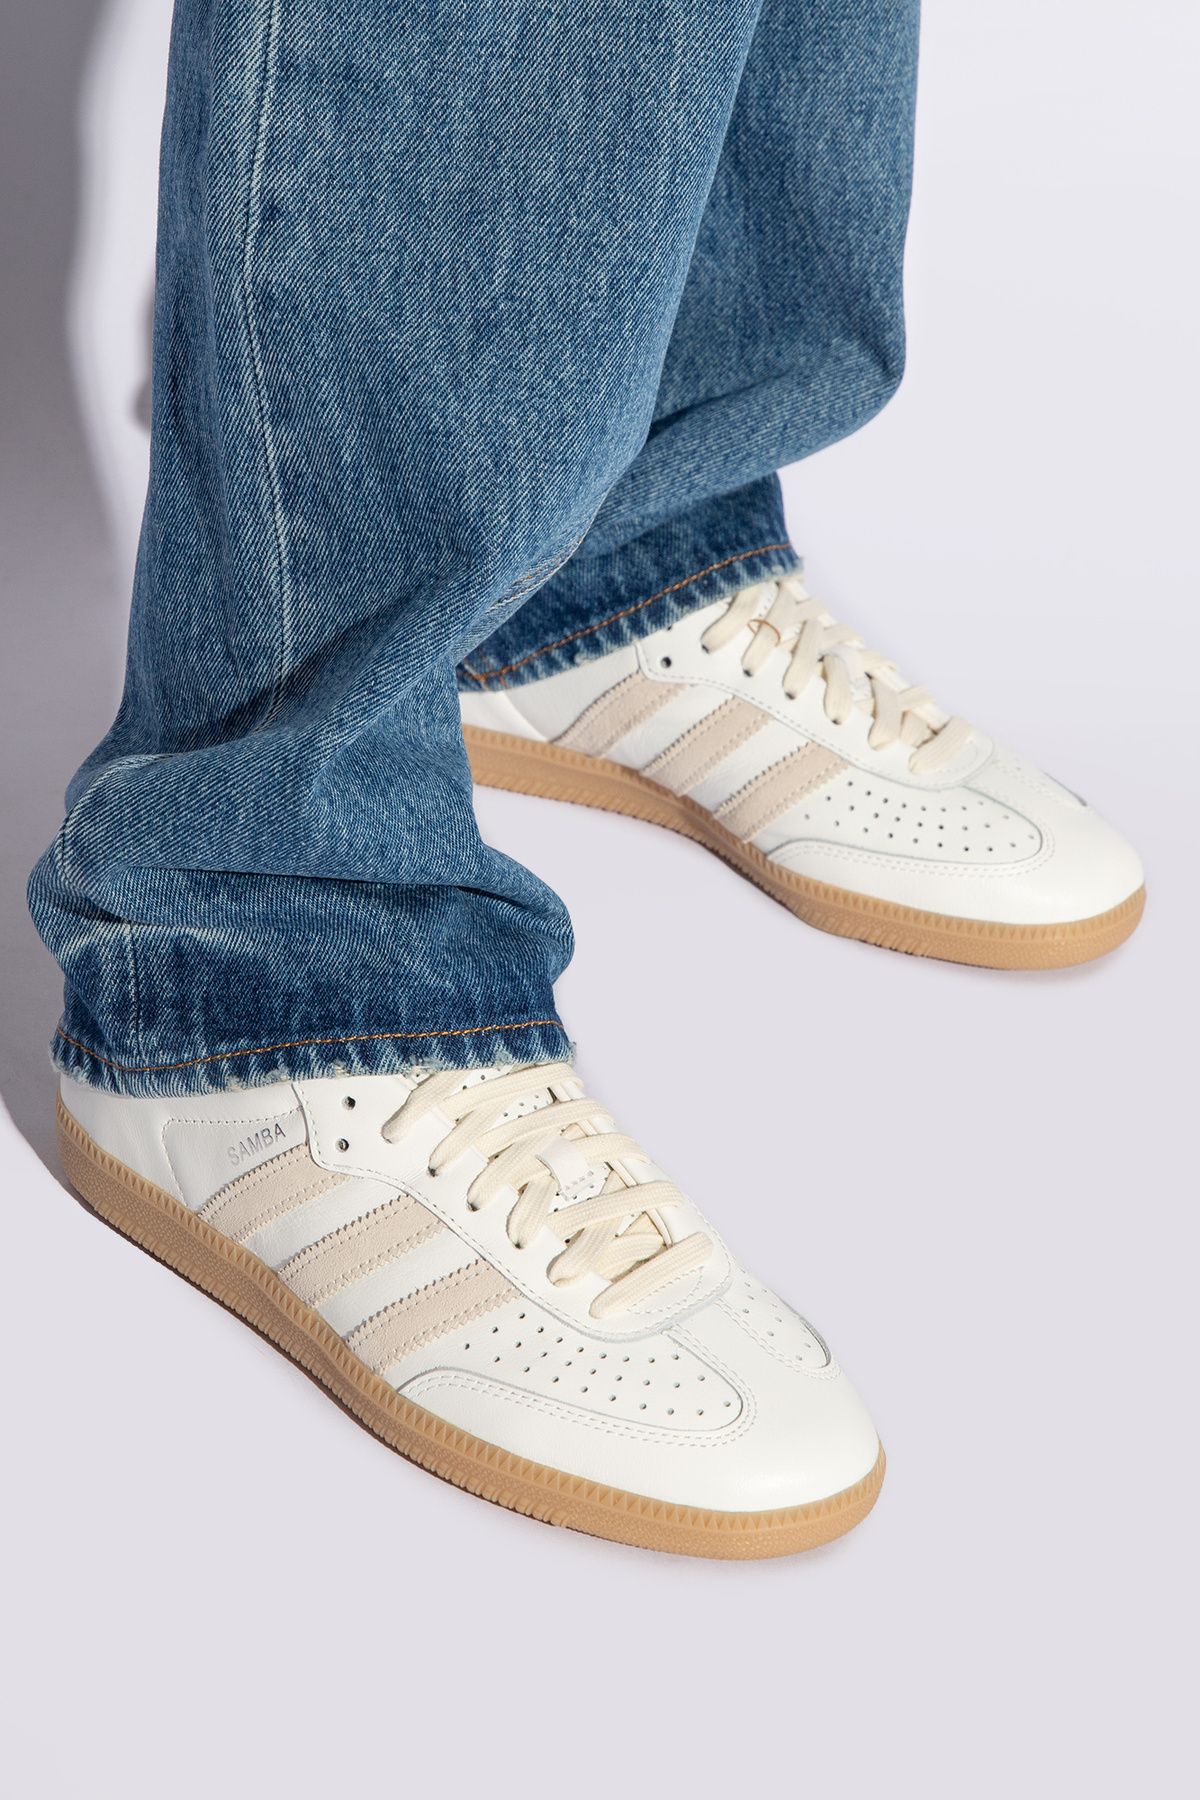 adidas Samba Og Günlük Spor Ayakkabı Sneaker Bej